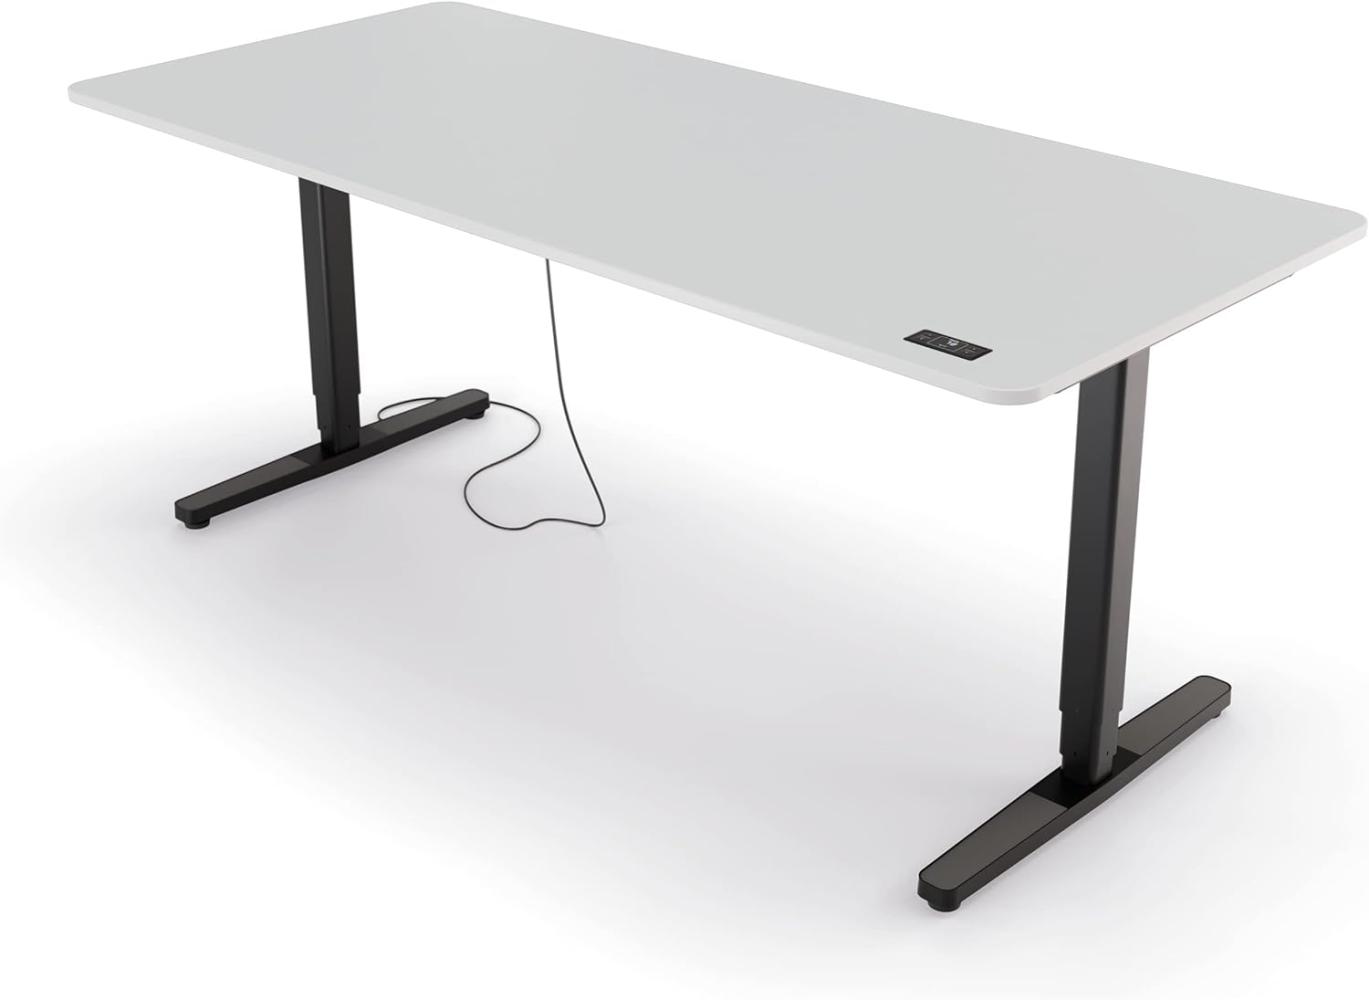 Yaasa Desk Pro II Elektrisch Höhenverstellbarer Schreibtisch, 180 x 80 cm, Offwhite-Schwarz, mit Speicherfunktion und Kollisionssensor Bild 1